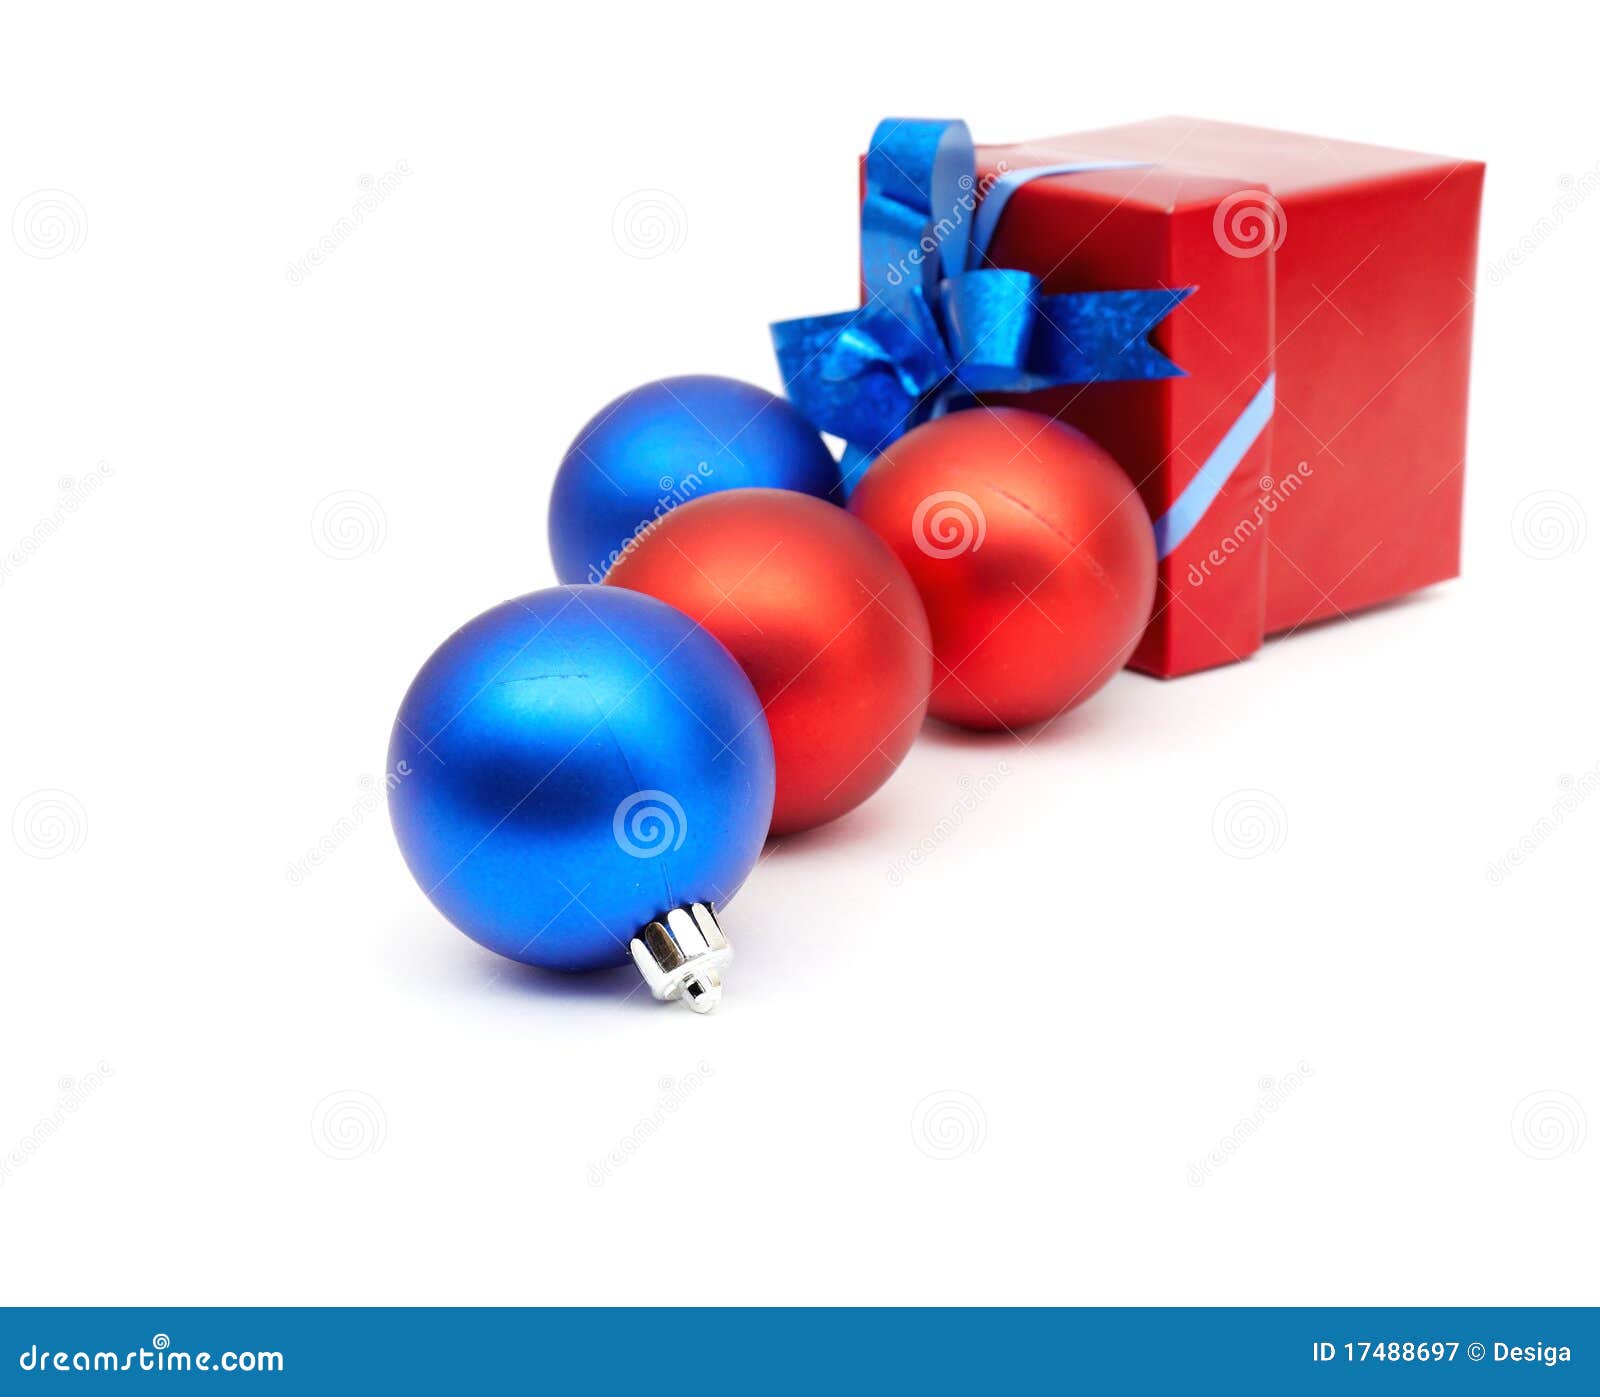 matt christmas balls and red gift box